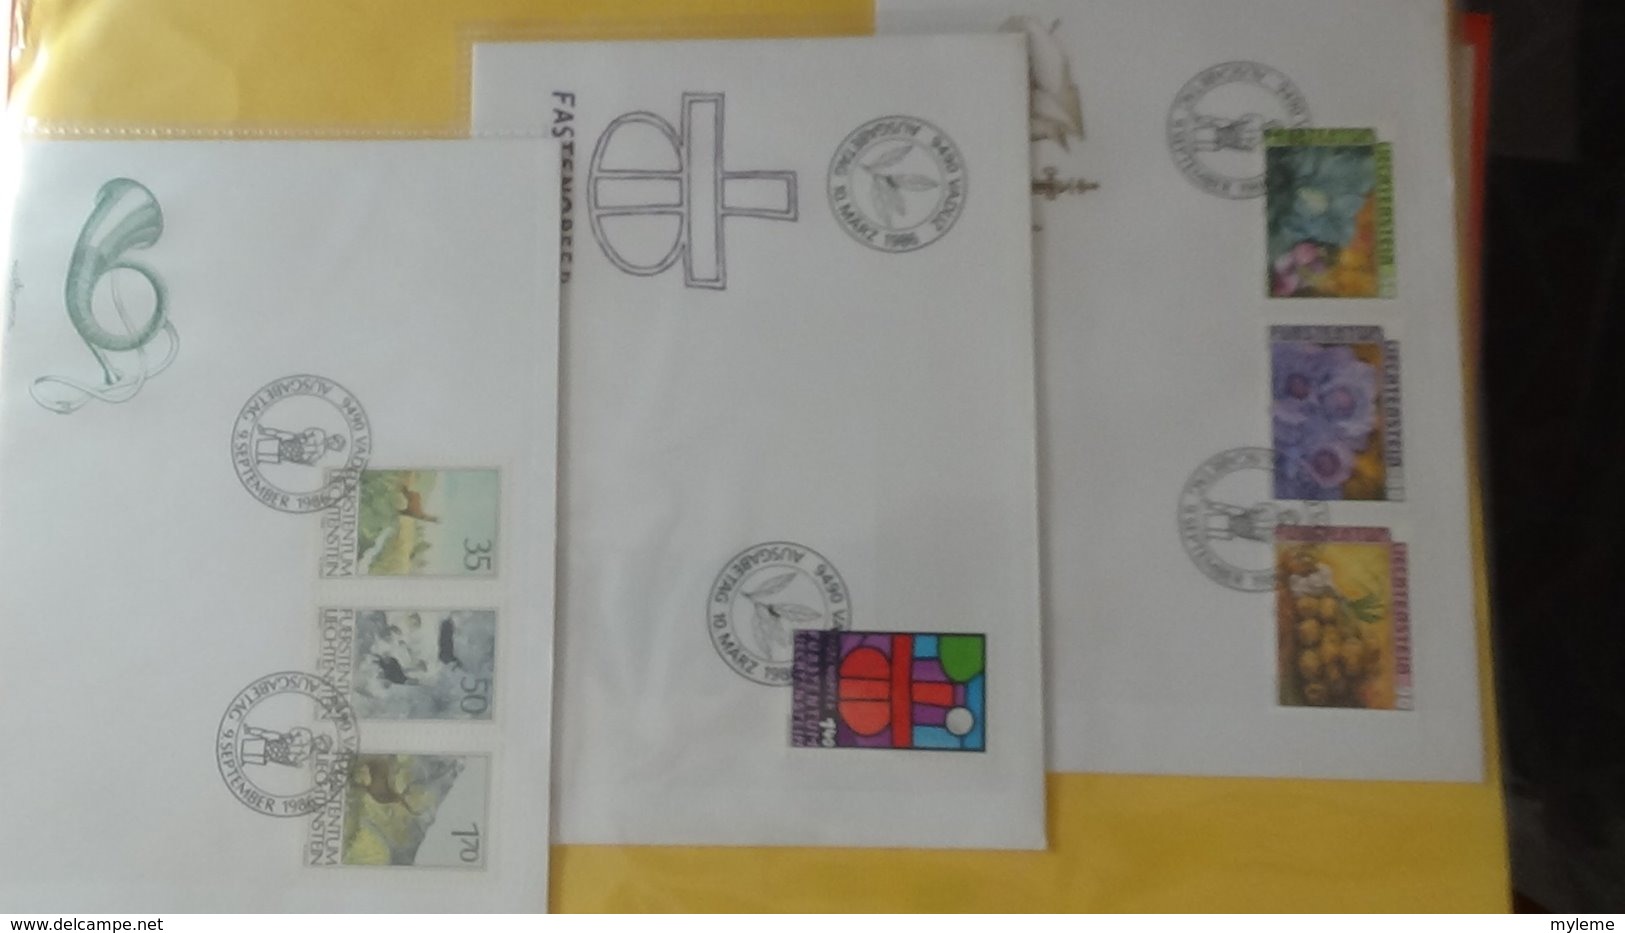 Dispersion d'une collection d'enveloppe 1er jour et autres dont 120 du LIECHTENSTEIN entre 1982 et 1992